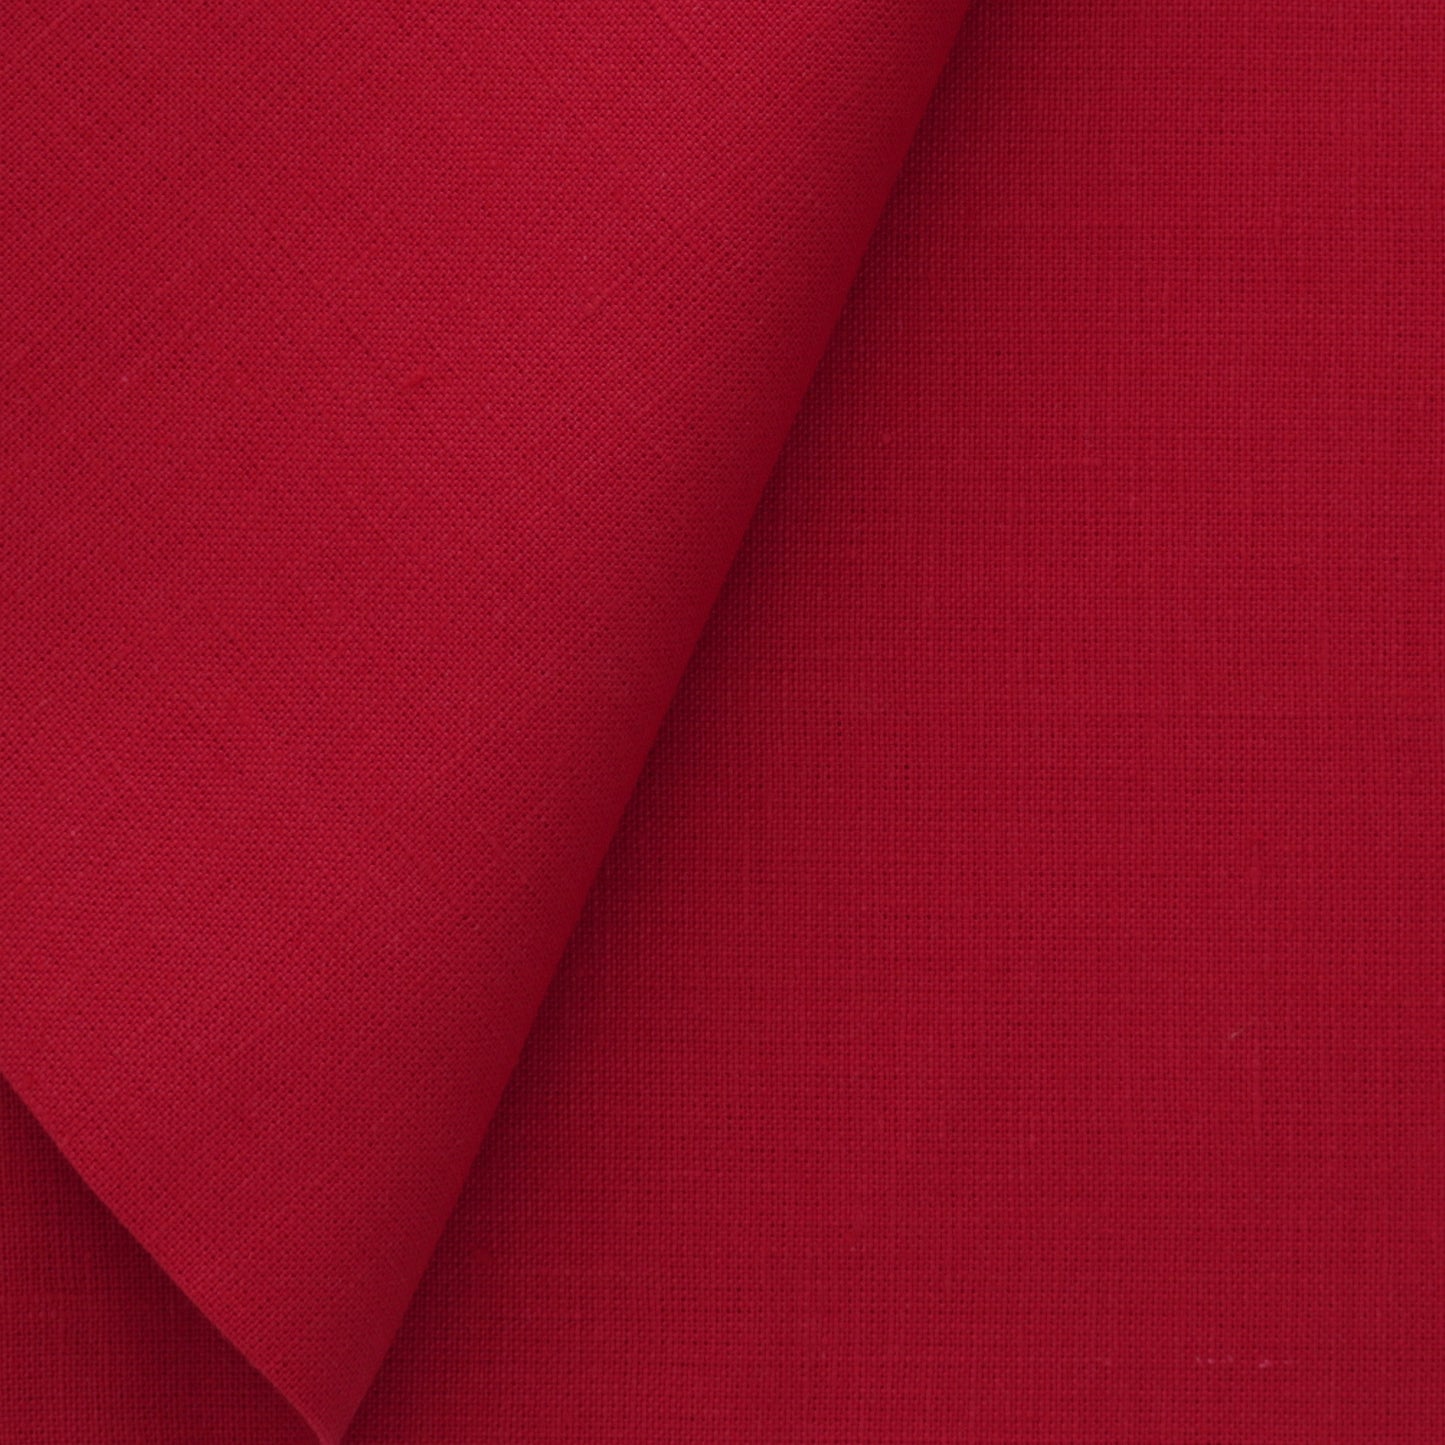 Serviettes de table en lin rouge (lot de 4)